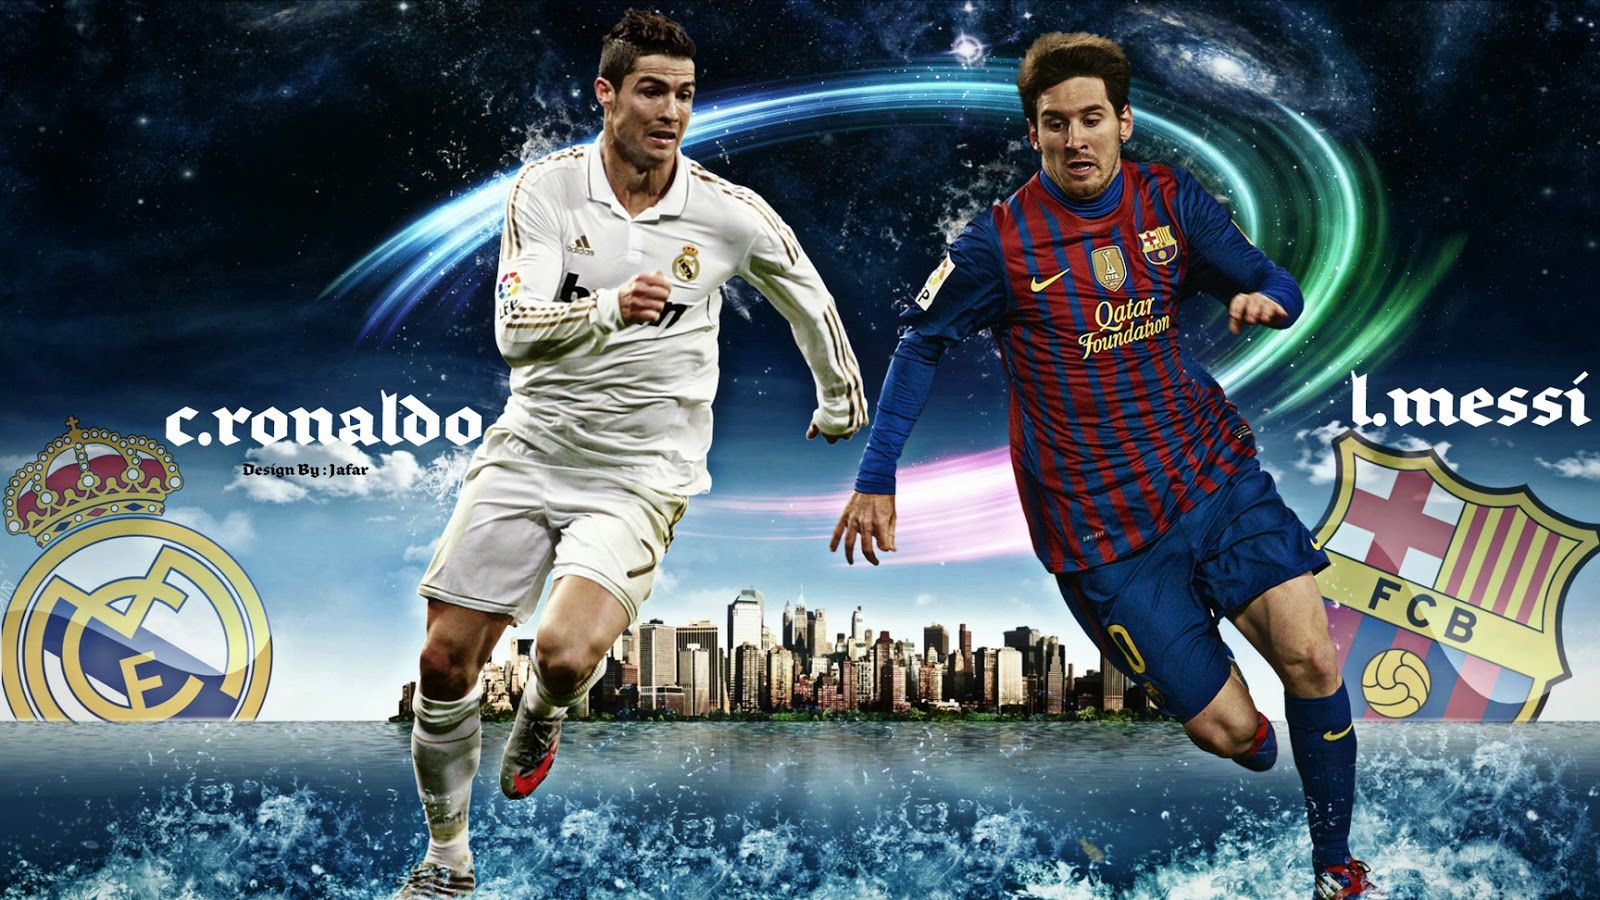 Messi Vs Ronaldo 2015 Wallpapers - những hình nền đẹp chắc chắn sẽ làm bạn xuýt xoa! Lựa chọn tuyệt vời cho những người hâm mộ bóng đá và những ai muốn tận dụng tính năng tuyệt vời của hình nền. Hãy tìm kiếm những hình ảnh liên quan đến từ khóa này để khám phá thêm.